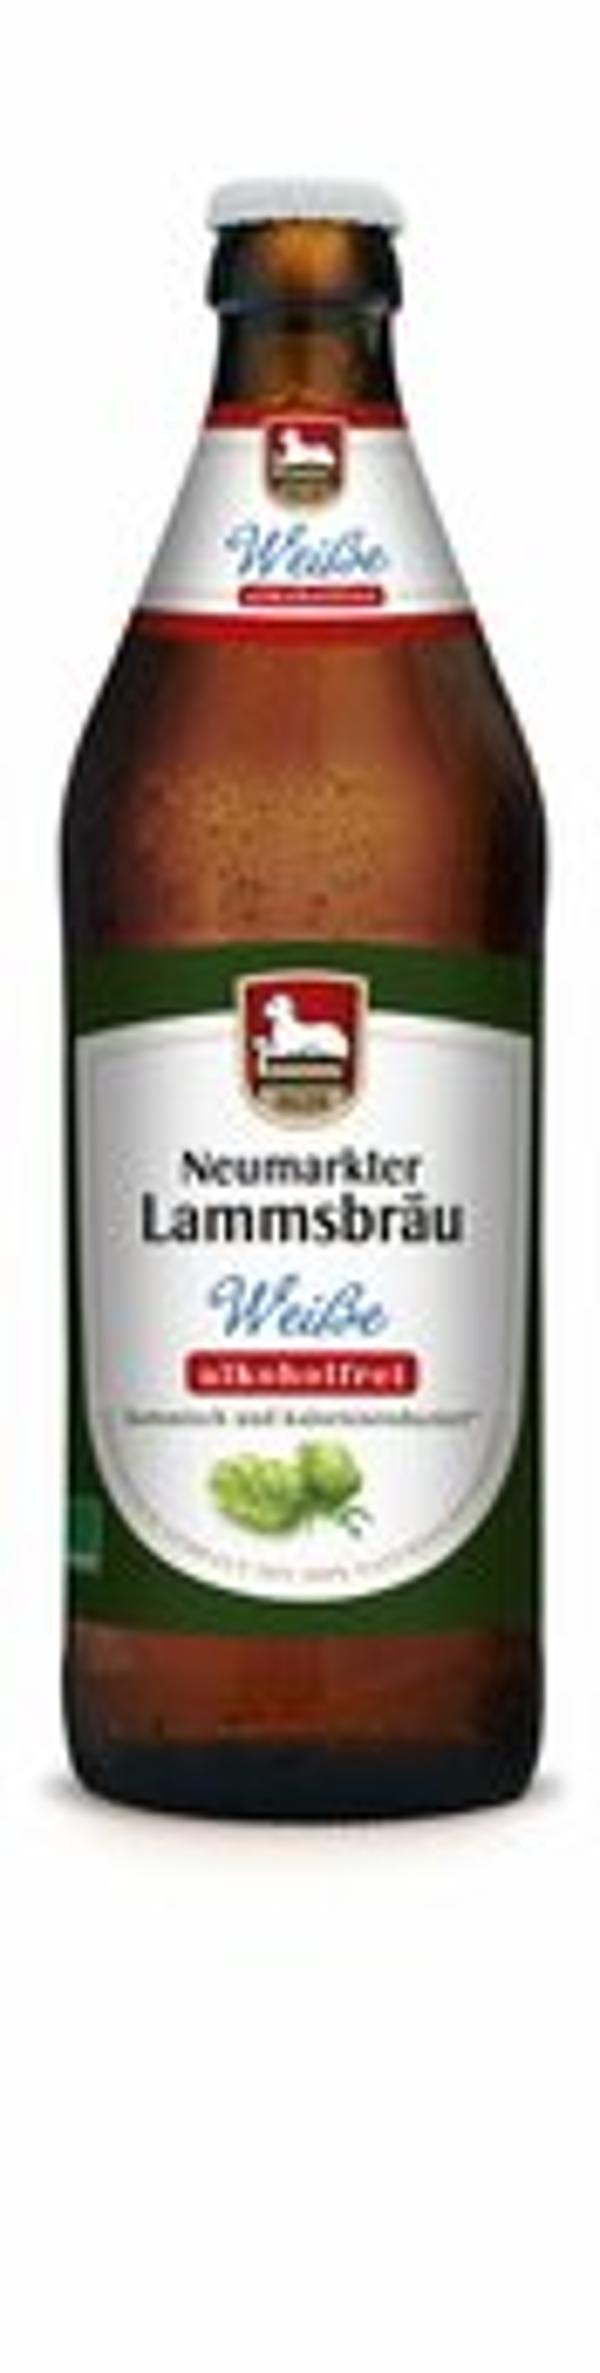 Produktfoto zu Lammsbräu Weiße -alkoholfrei- 0,5l